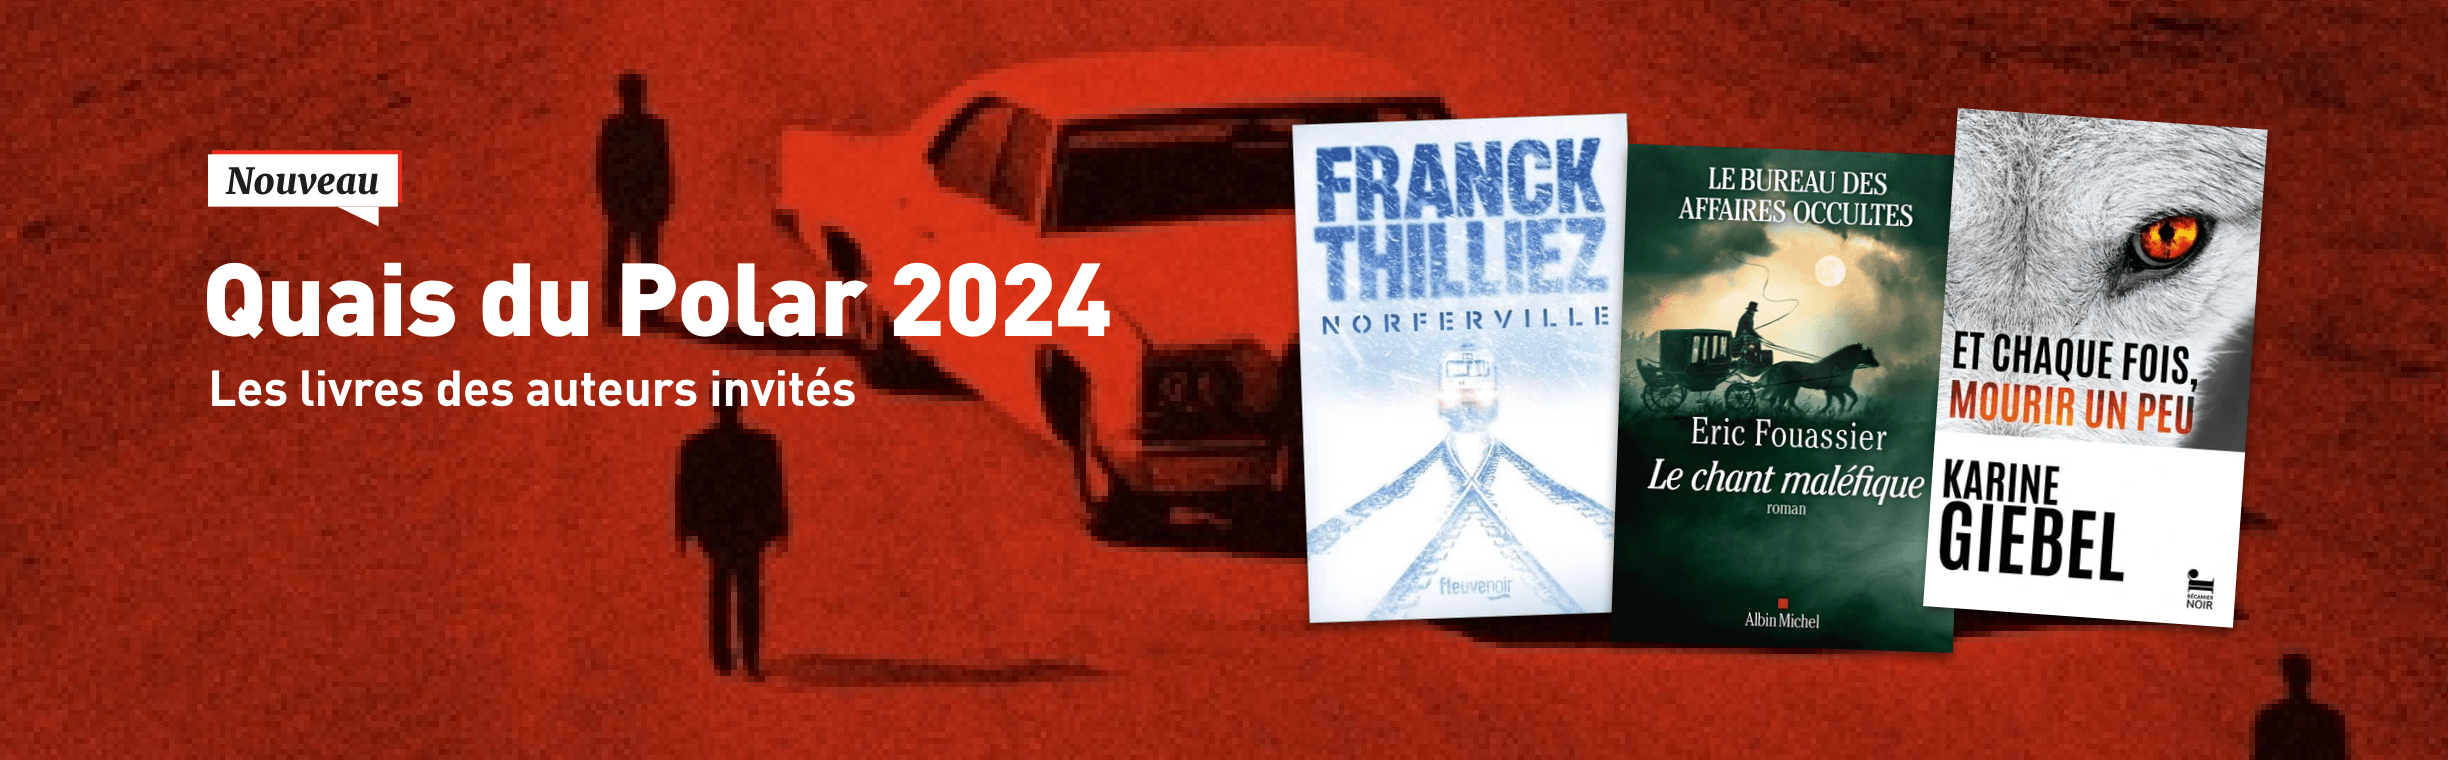 Quais du polar 2024 : les livres des auteurs invités